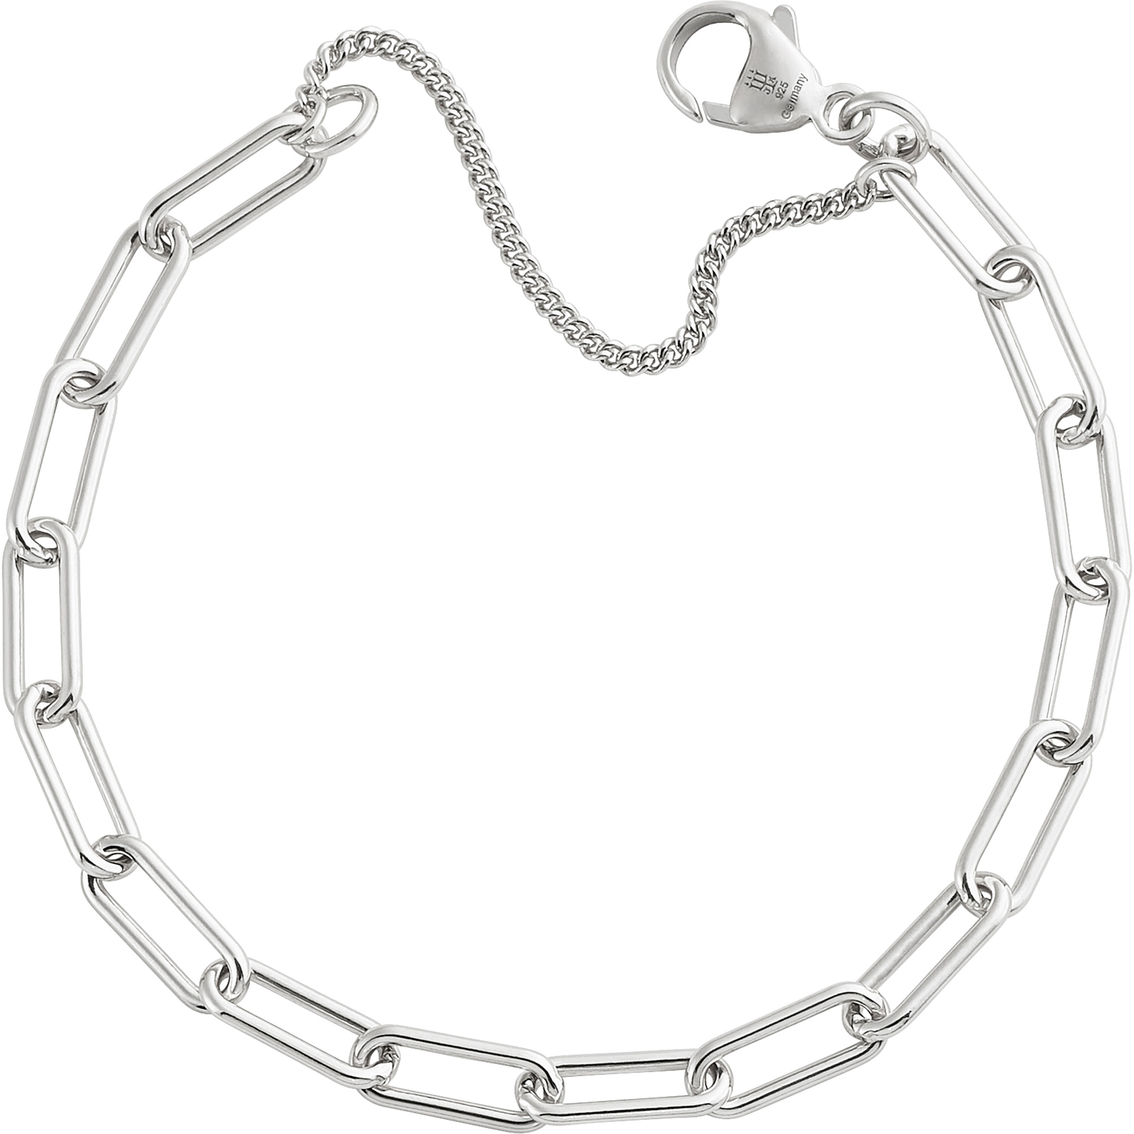 James Avery Elongated Link Charm Bracelet | Silver Bracelets | Jewelry ...